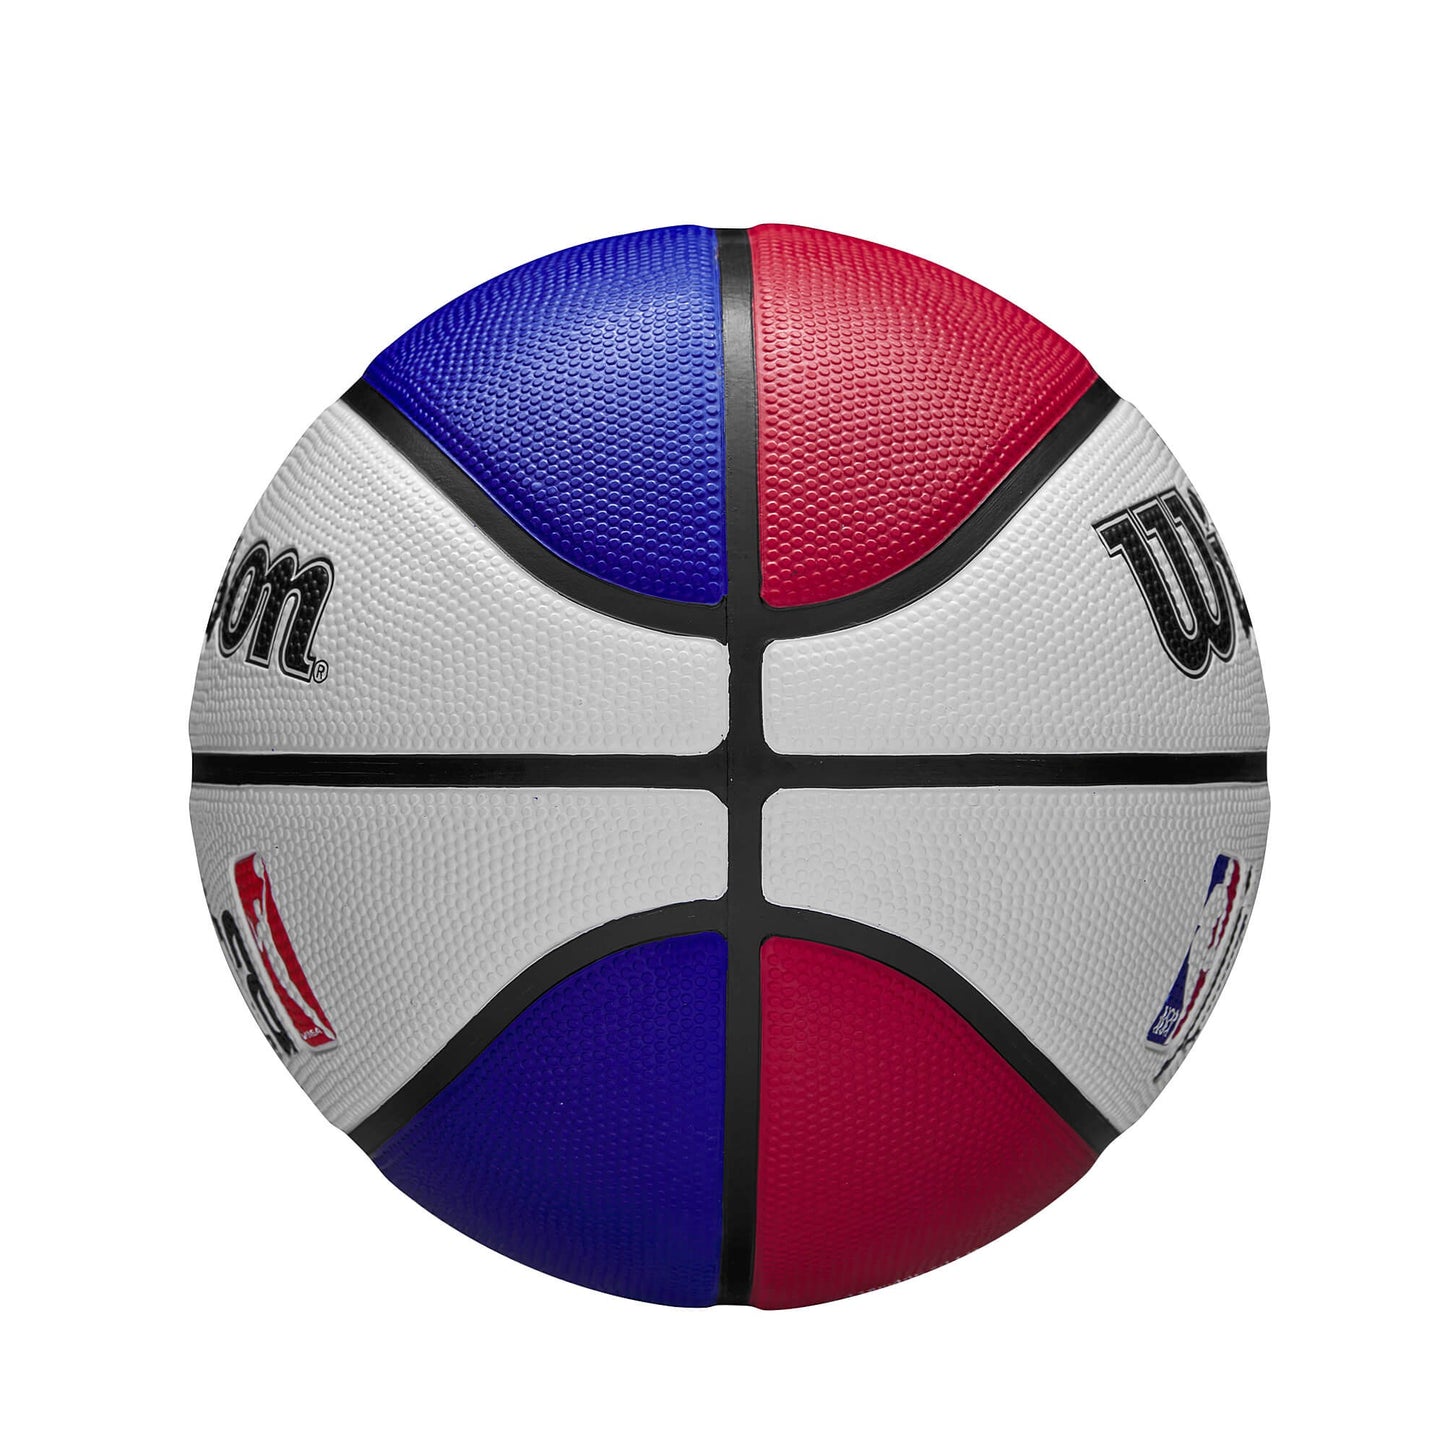 Wilson Jr. NBA Drv Light Fam Logo Bskt. (sz. 5) Blue/Red/White